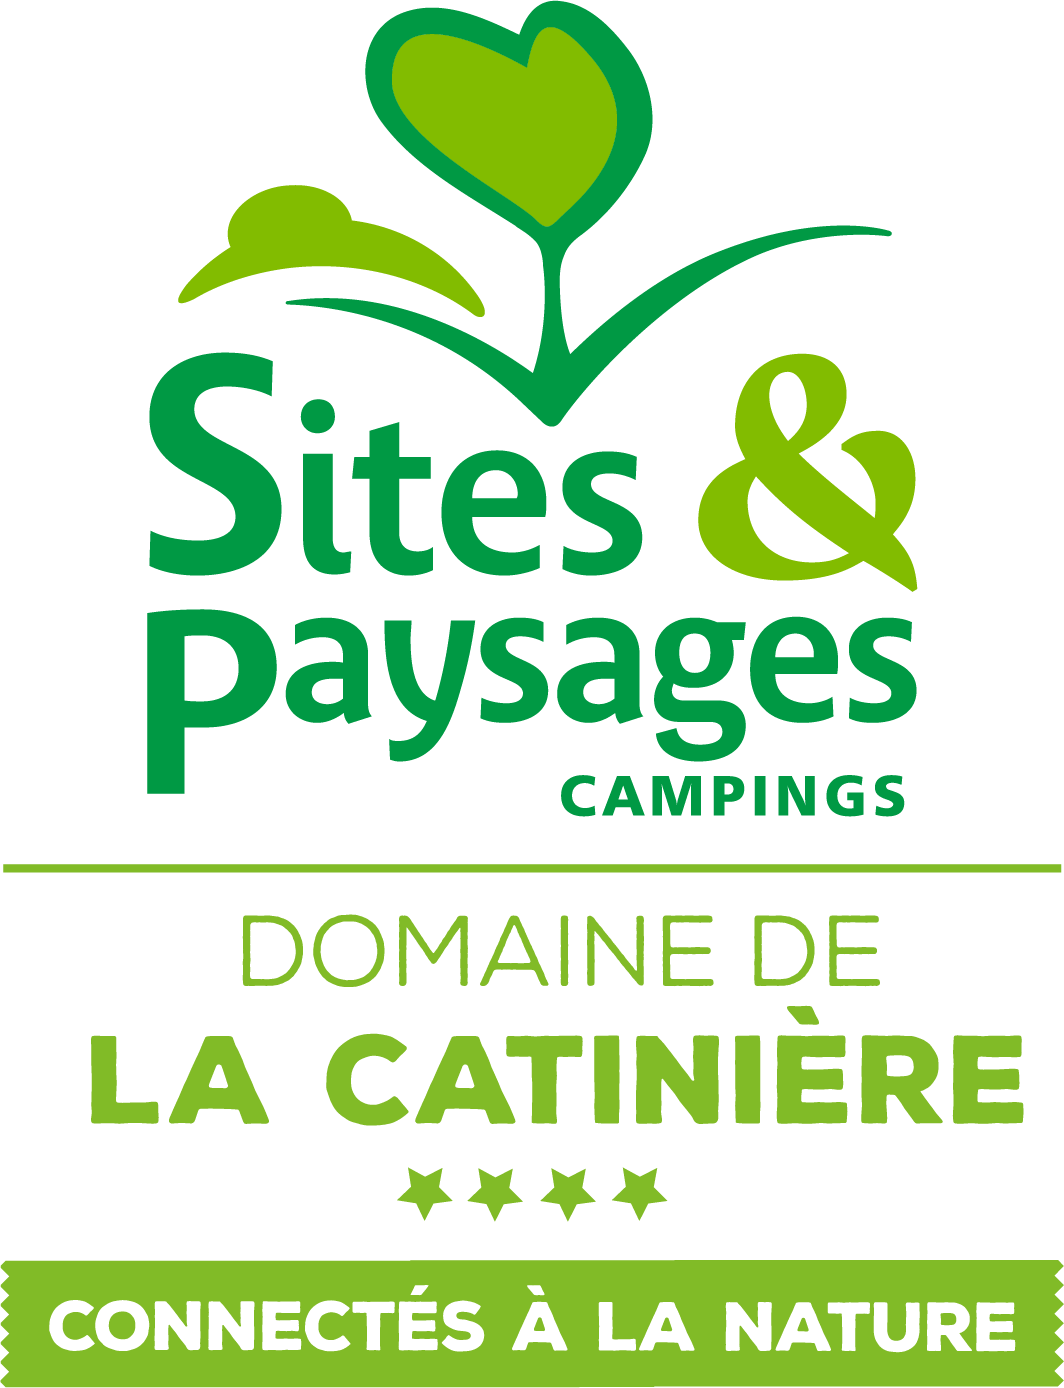 Camping Domaine de la Catinière